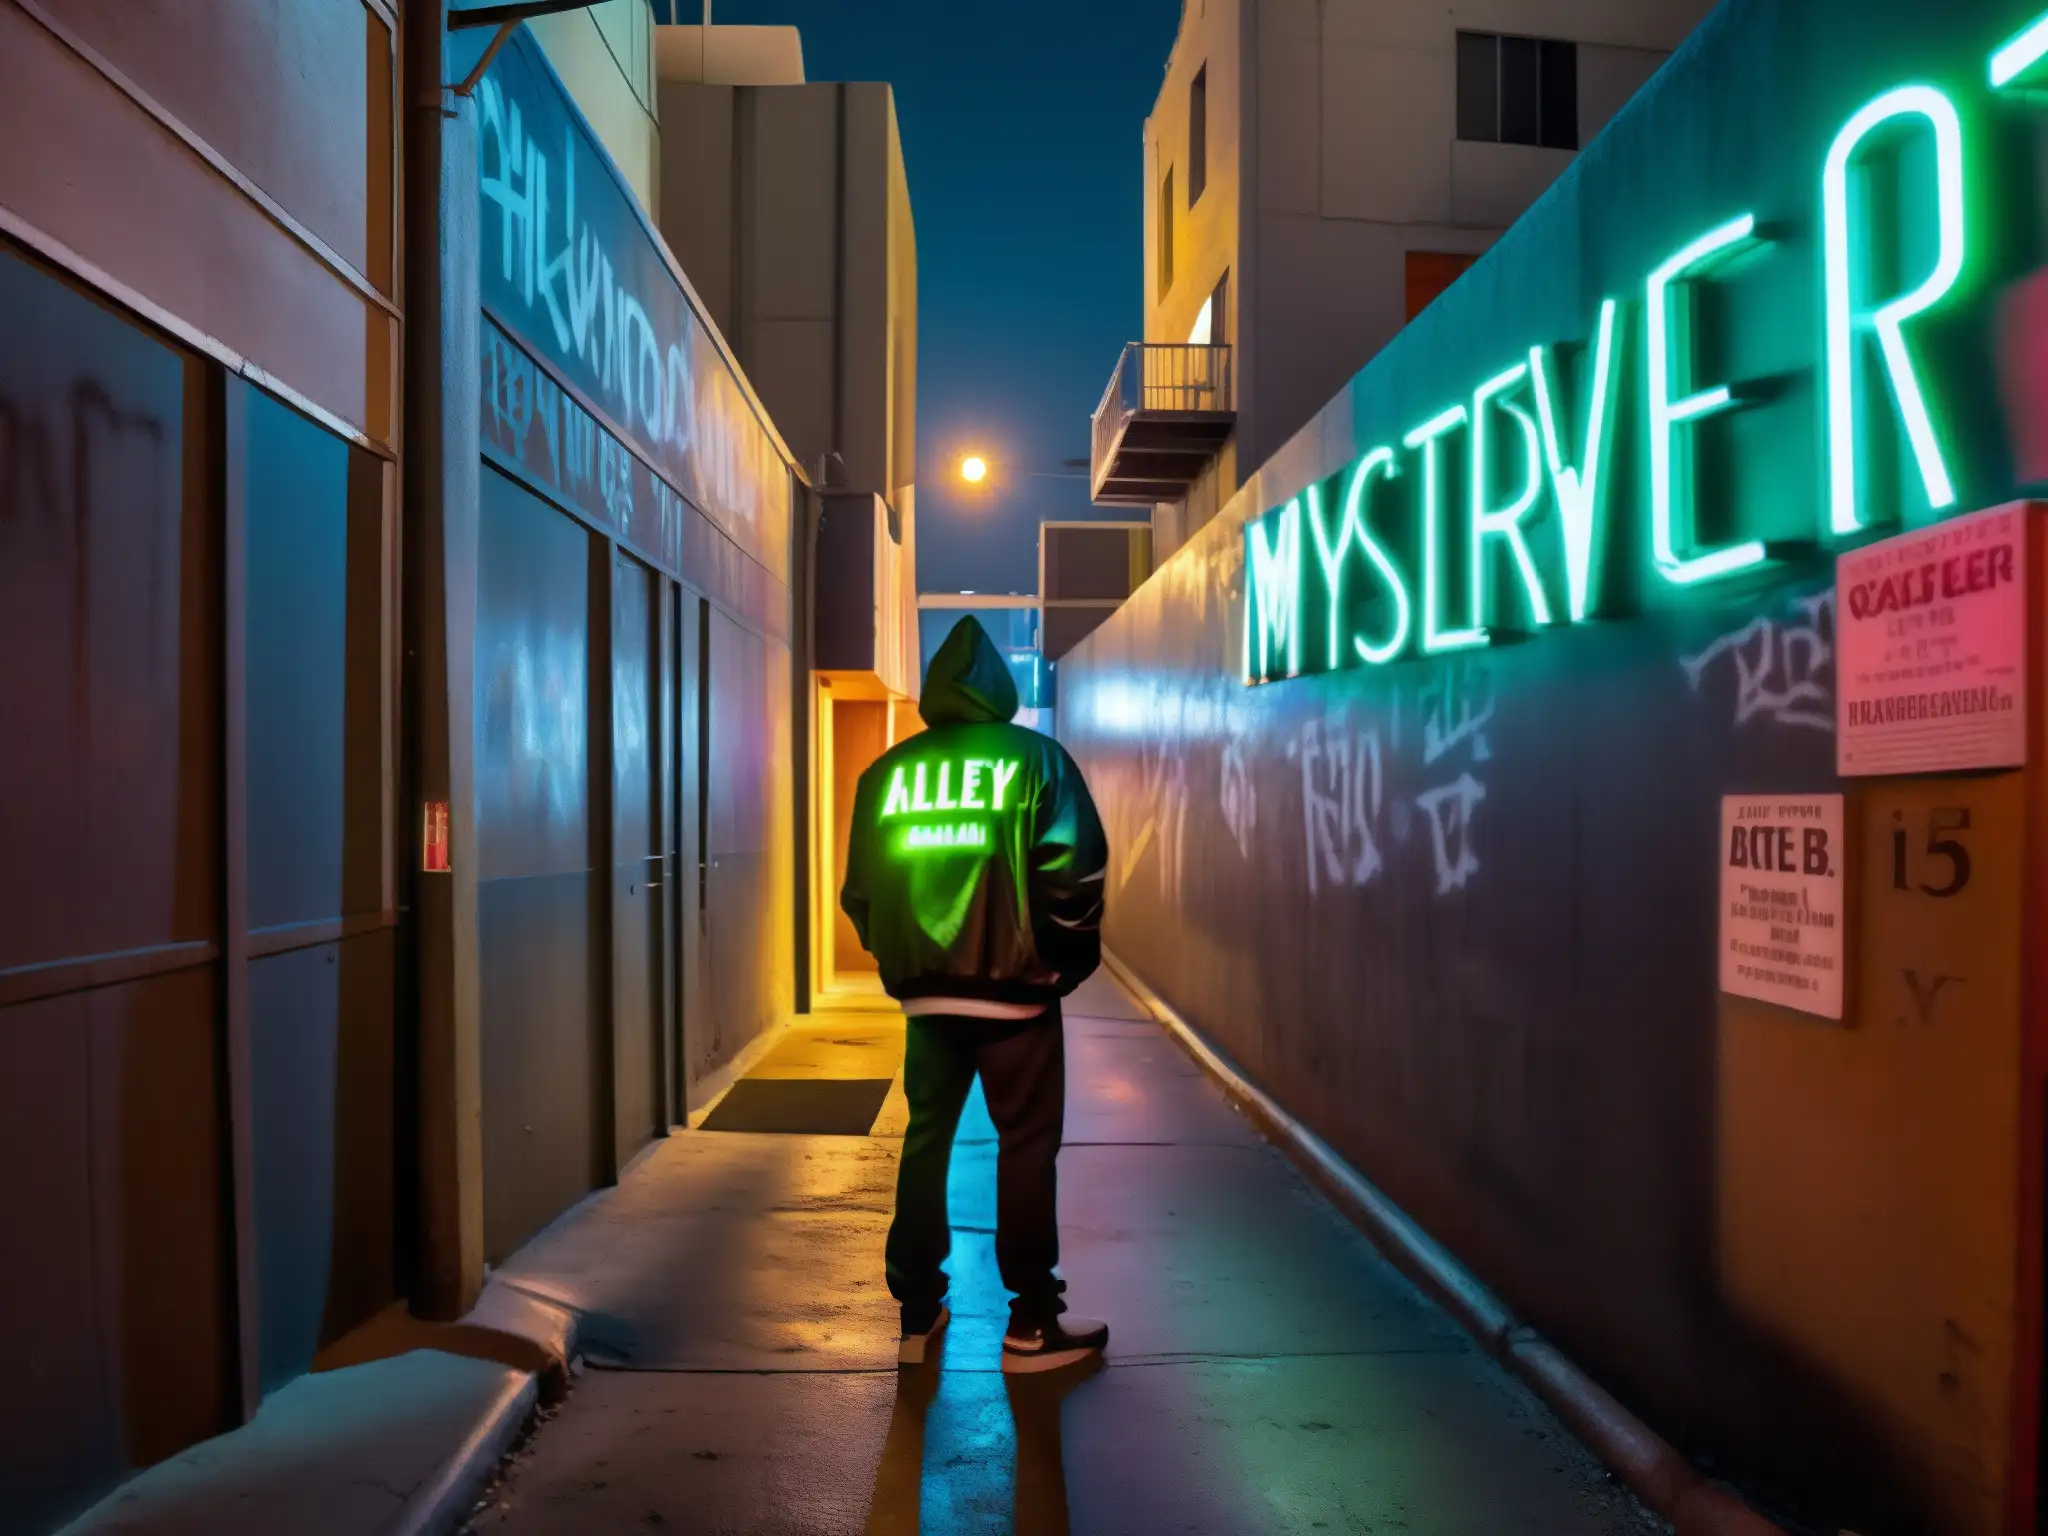 Alleyway de Hollywood con graffiti y letreros de neón, crea una atmósfera misteriosa y evoca leyendas urbanas de Hollywood